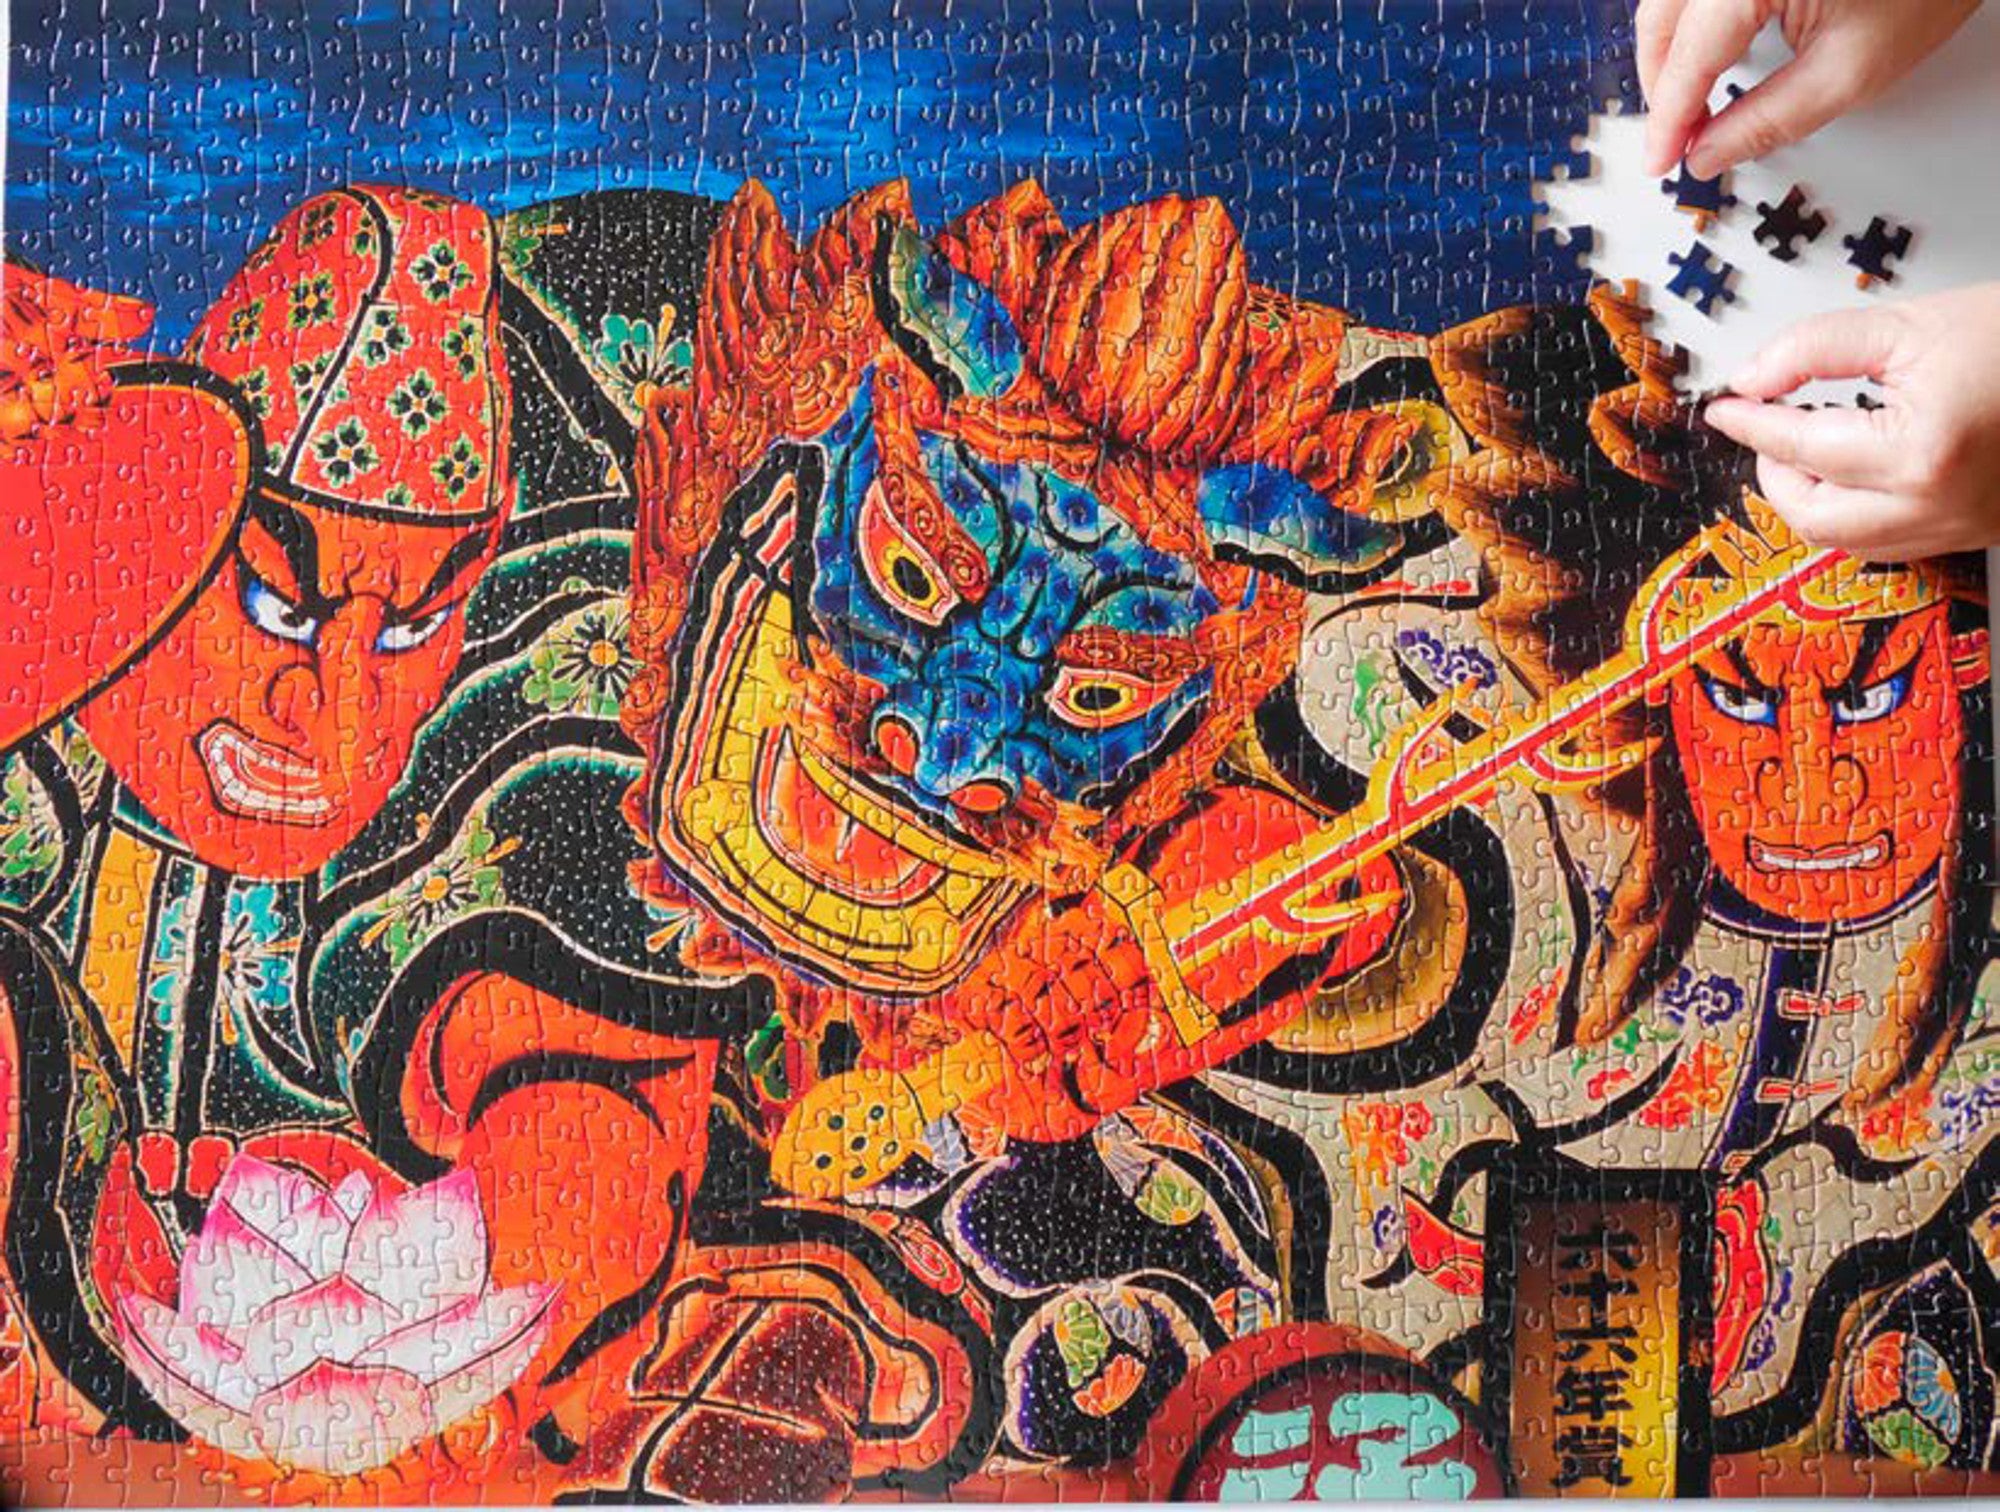 Japan's Samurai Warrior Festival Puzzle (1000pc)